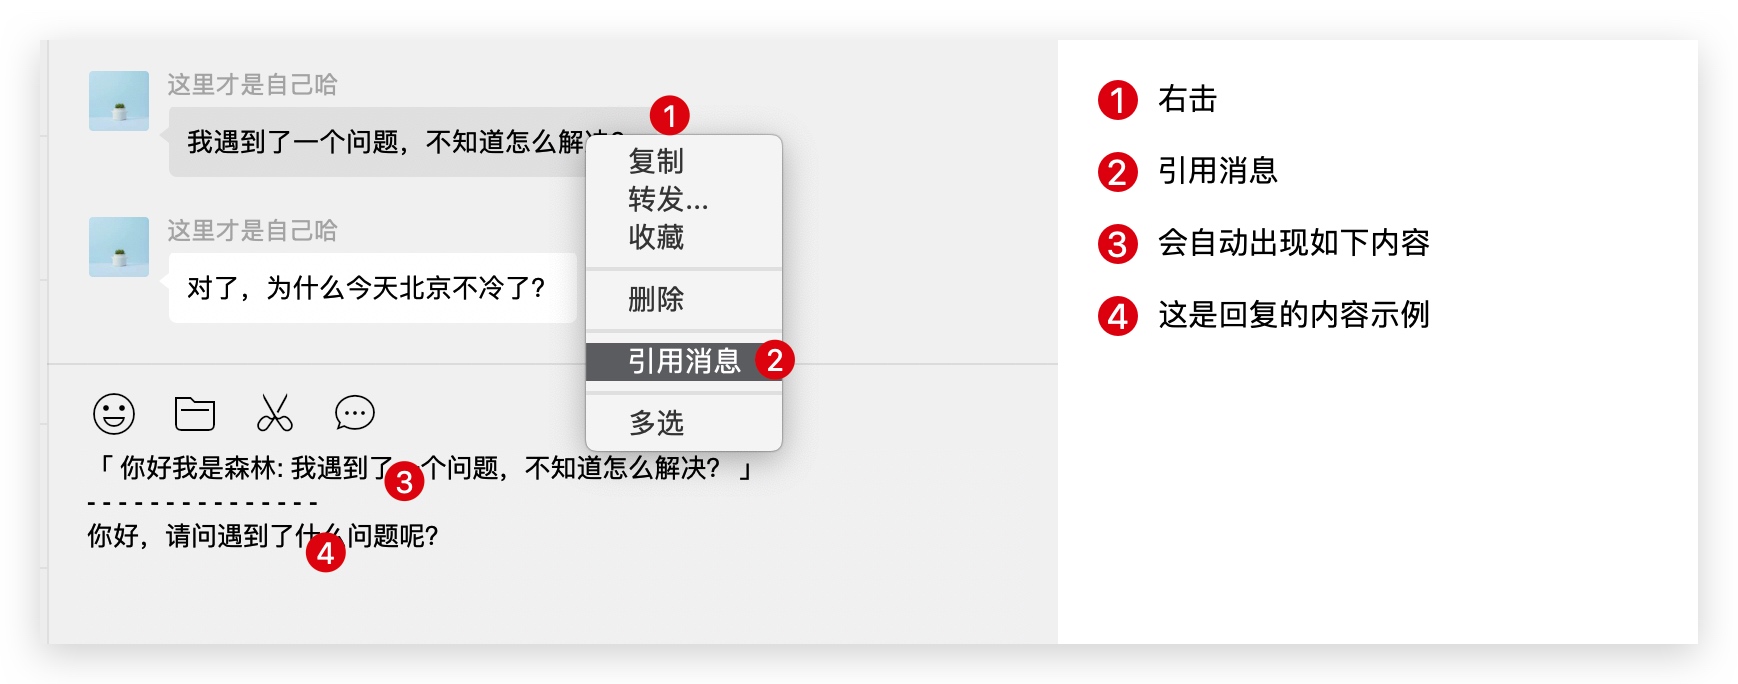 中文最新版在线官网_whatsapp中文最新版_中文最新版地址在线